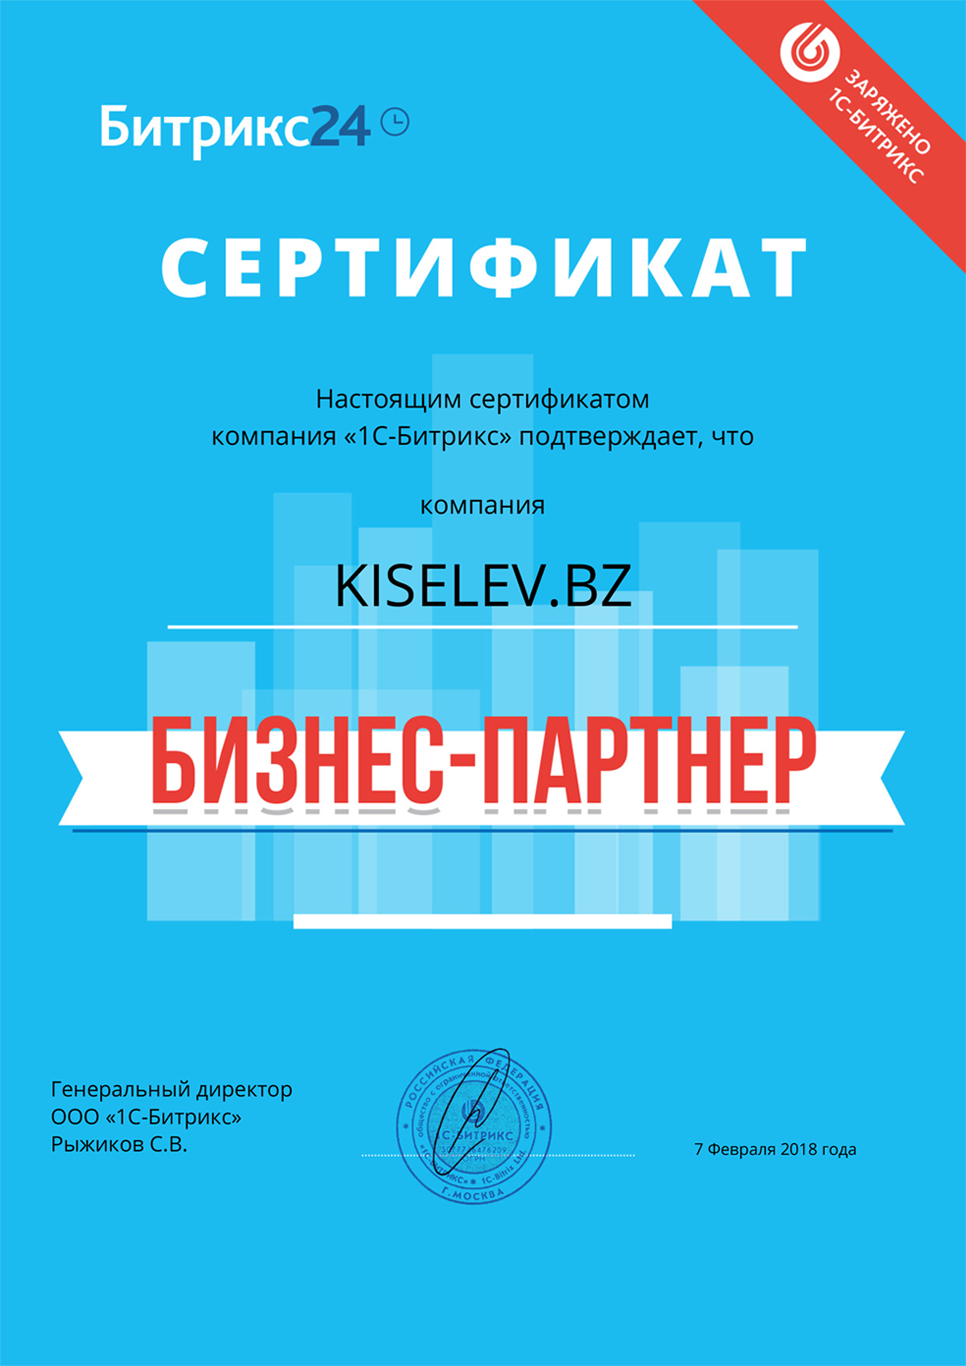 Сертификат партнёра по АМОСРМ в Меленках